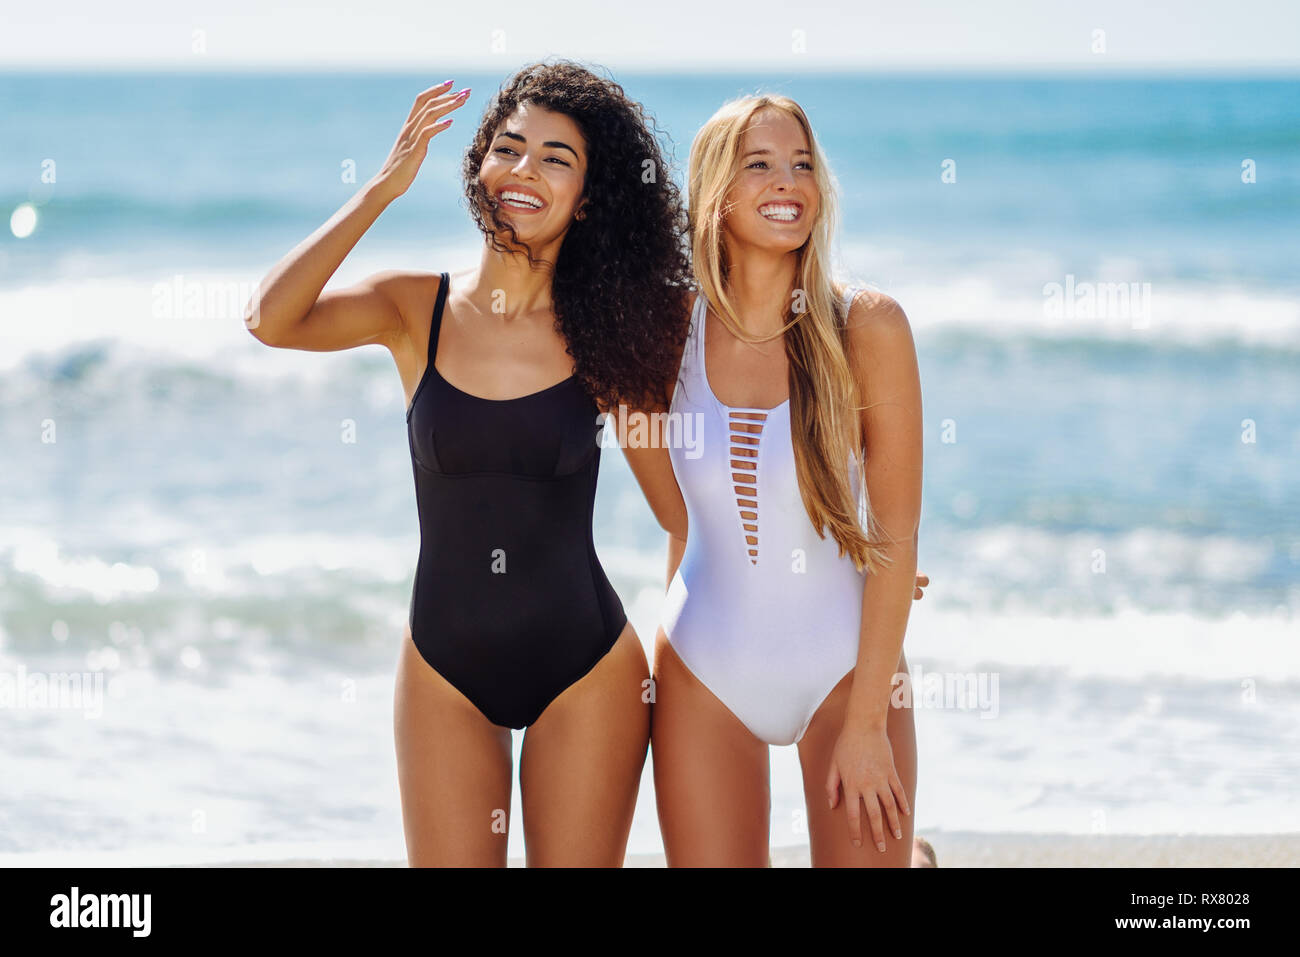 Zwei junge Frauen mit schönen Körpern im Badeanzug an einem tropischen  Strand Stockfotografie - Alamy